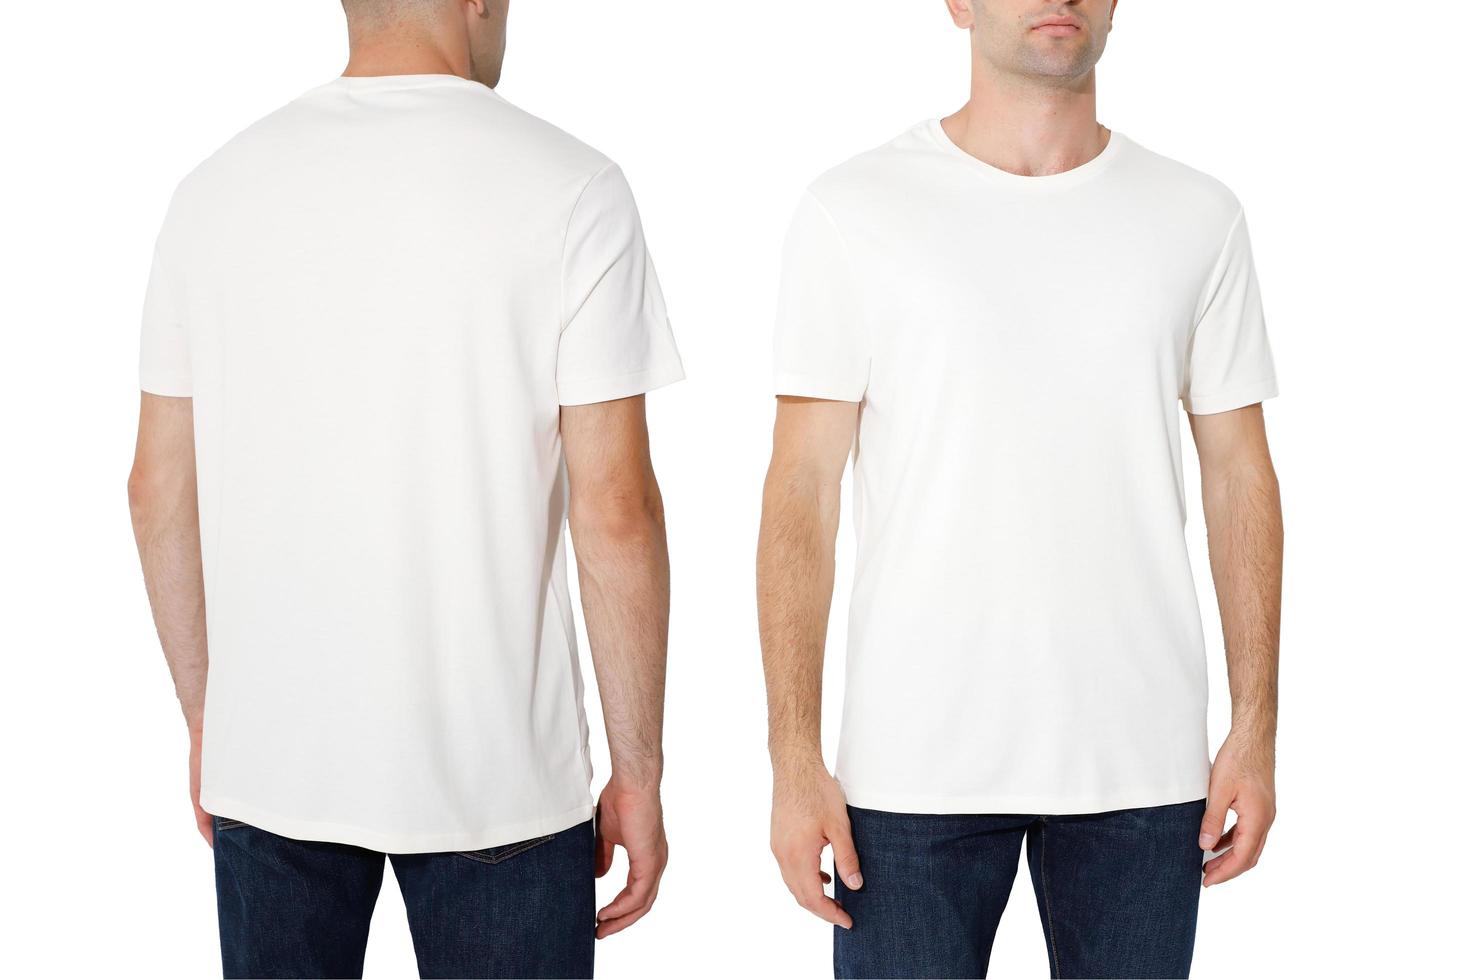 t-shirt på en man, isolerad på en vit bakgrund, kopiera utrymmet foto